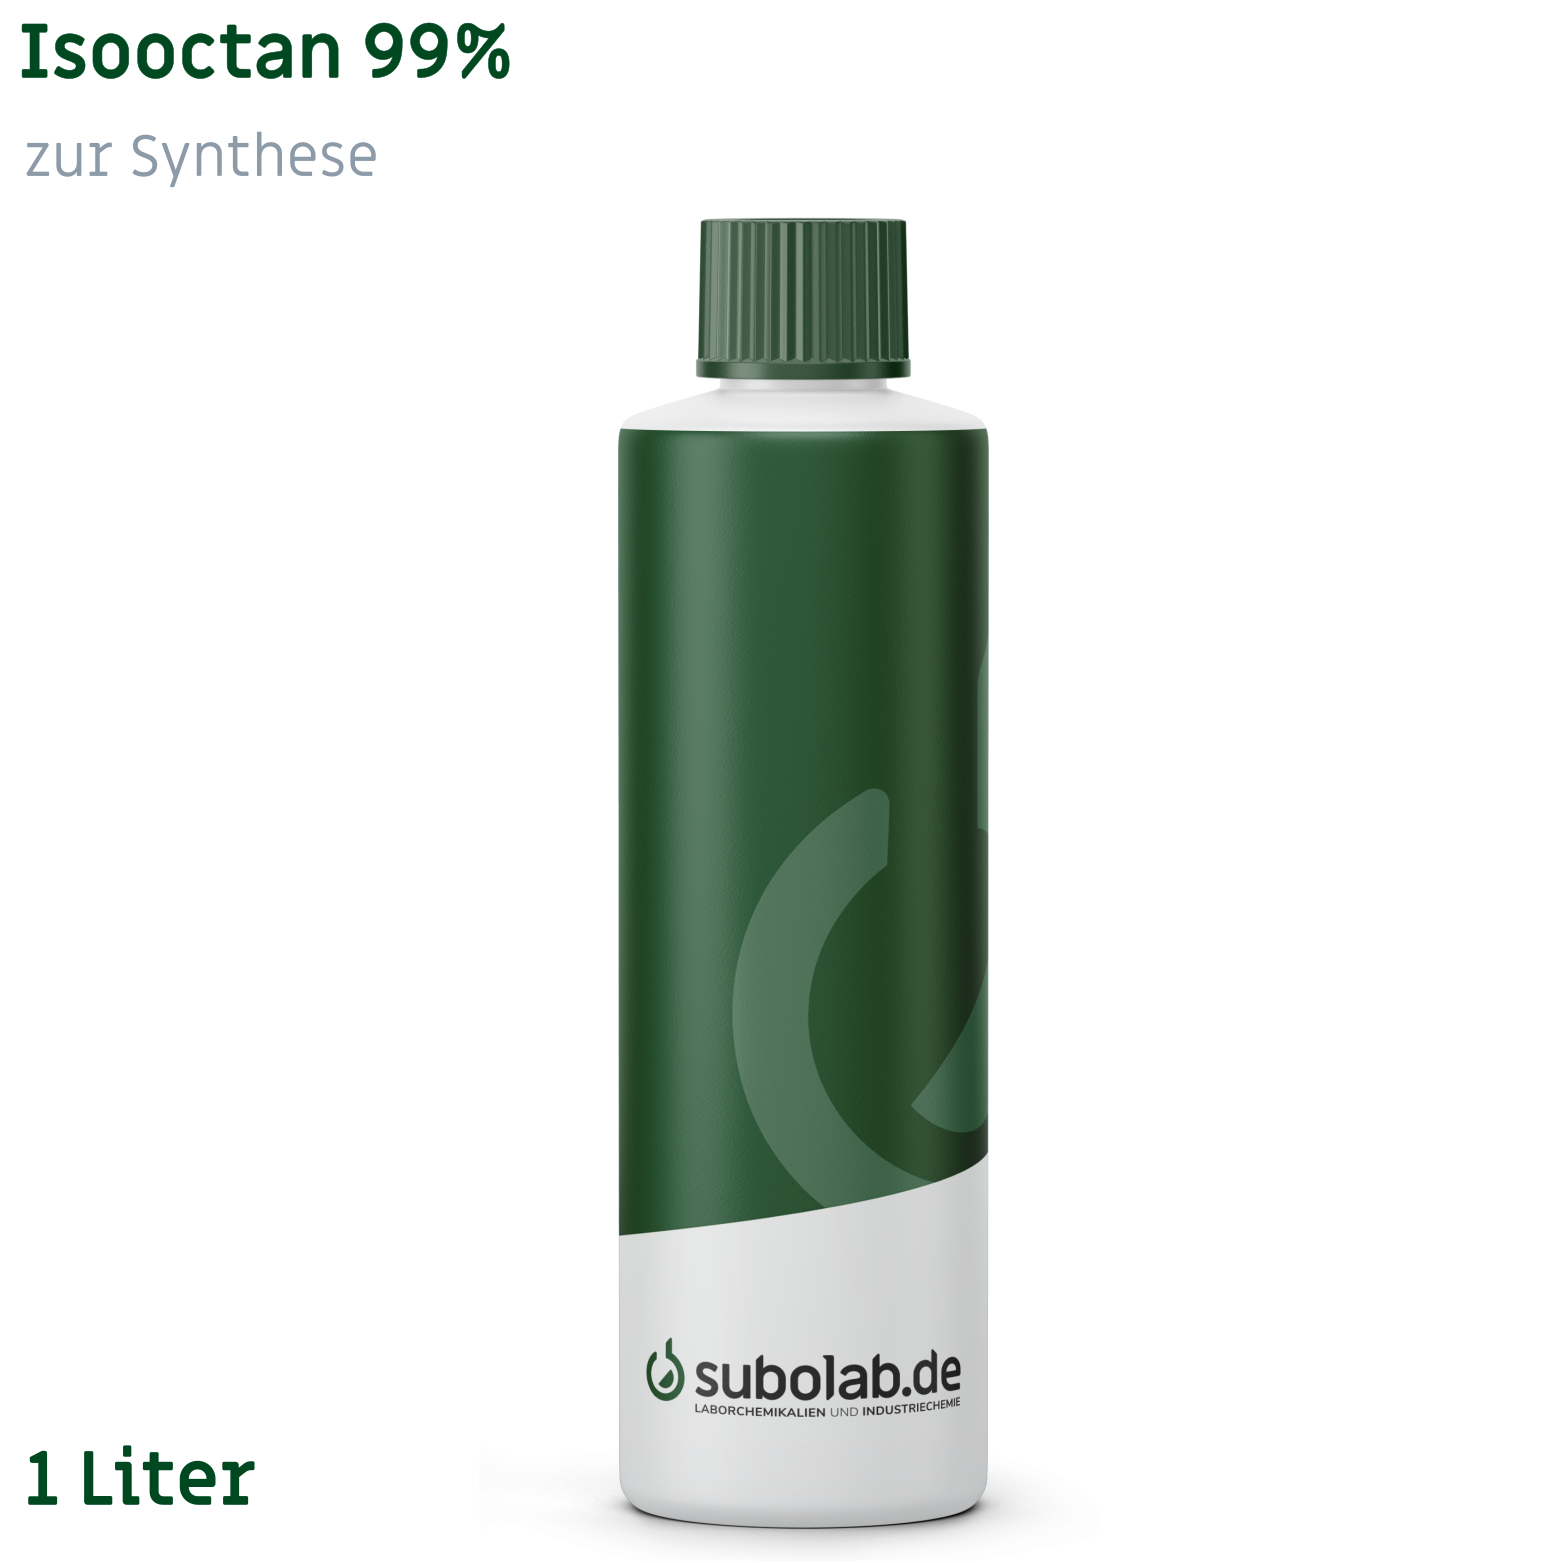 Bild von Isooctan 99% zur Synthese (1 Liter)